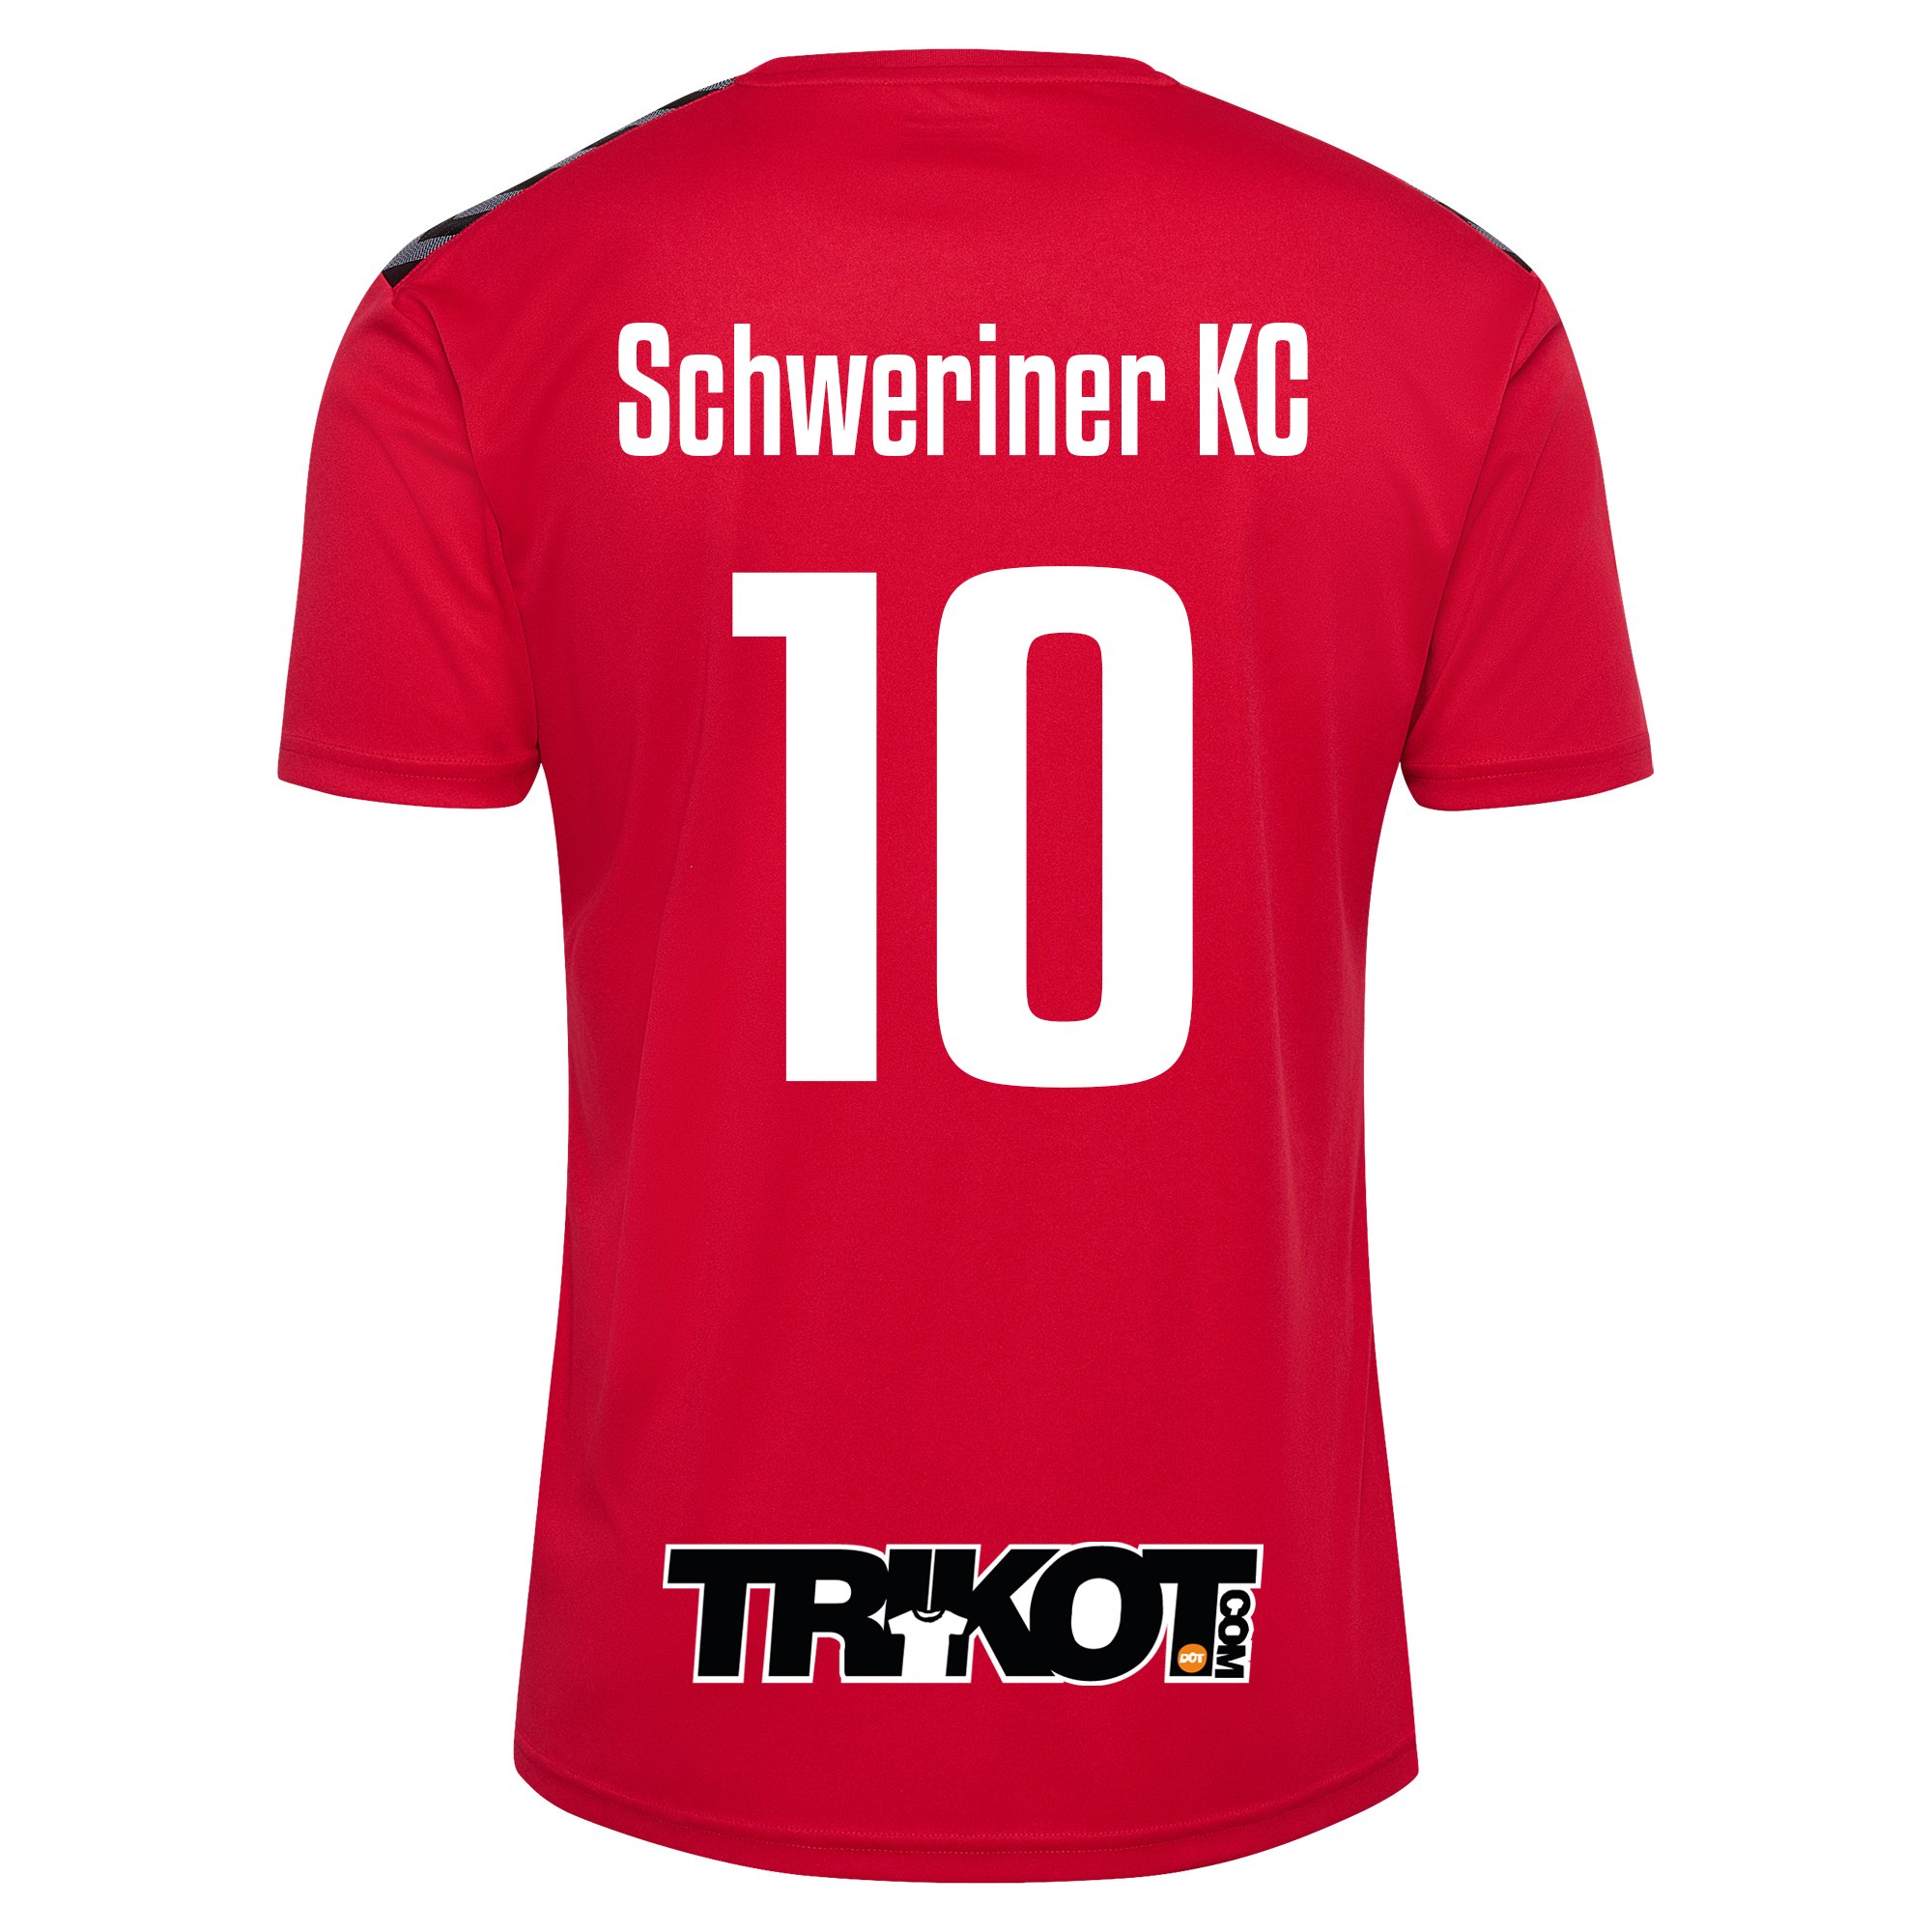 Schweriner KC Trikot